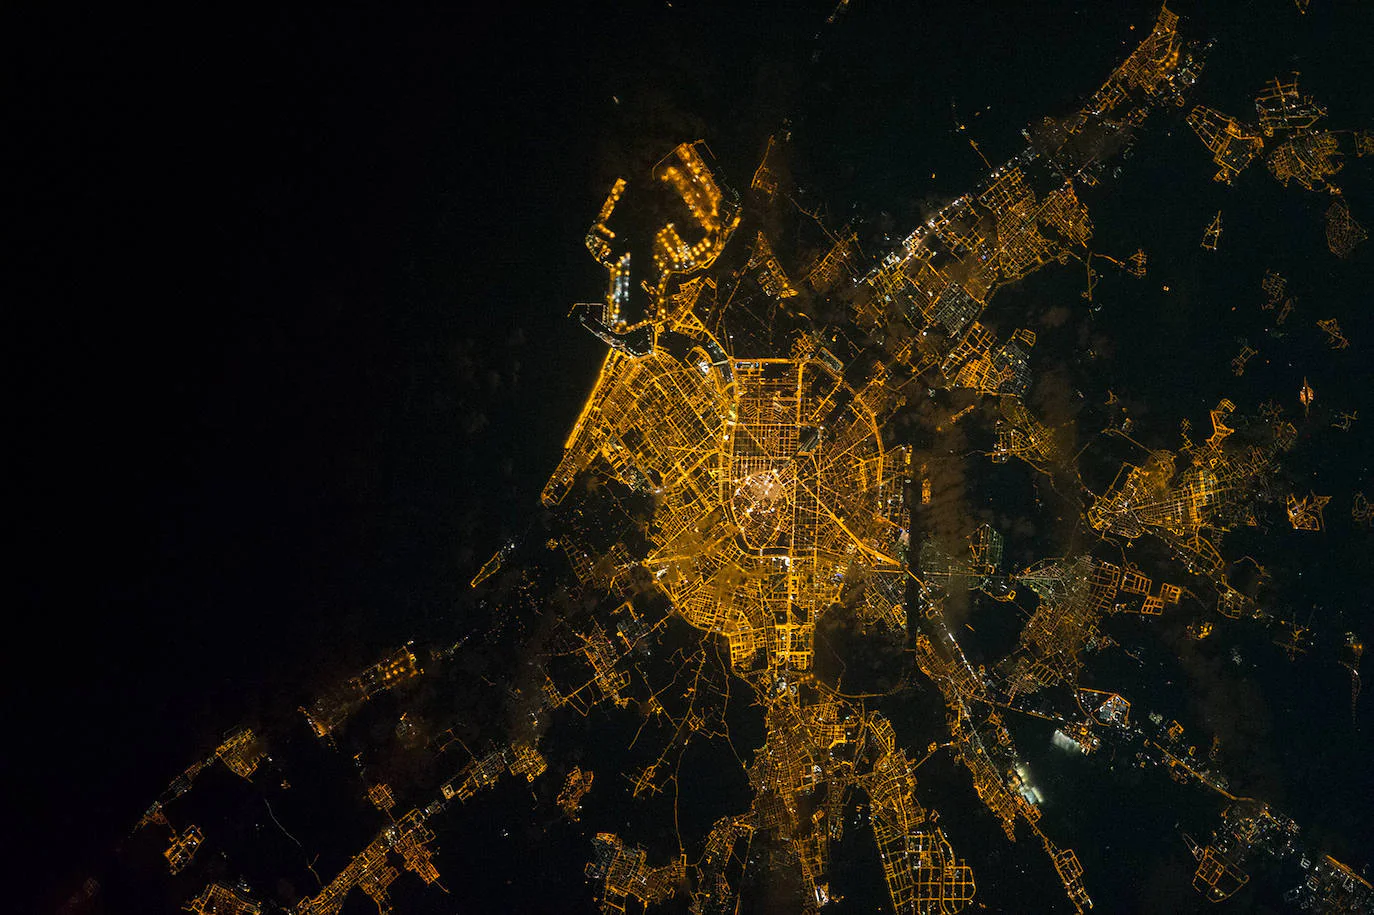 2. Valencia: imagen tomada por un astronauta en la Estación Espacial Internacional.